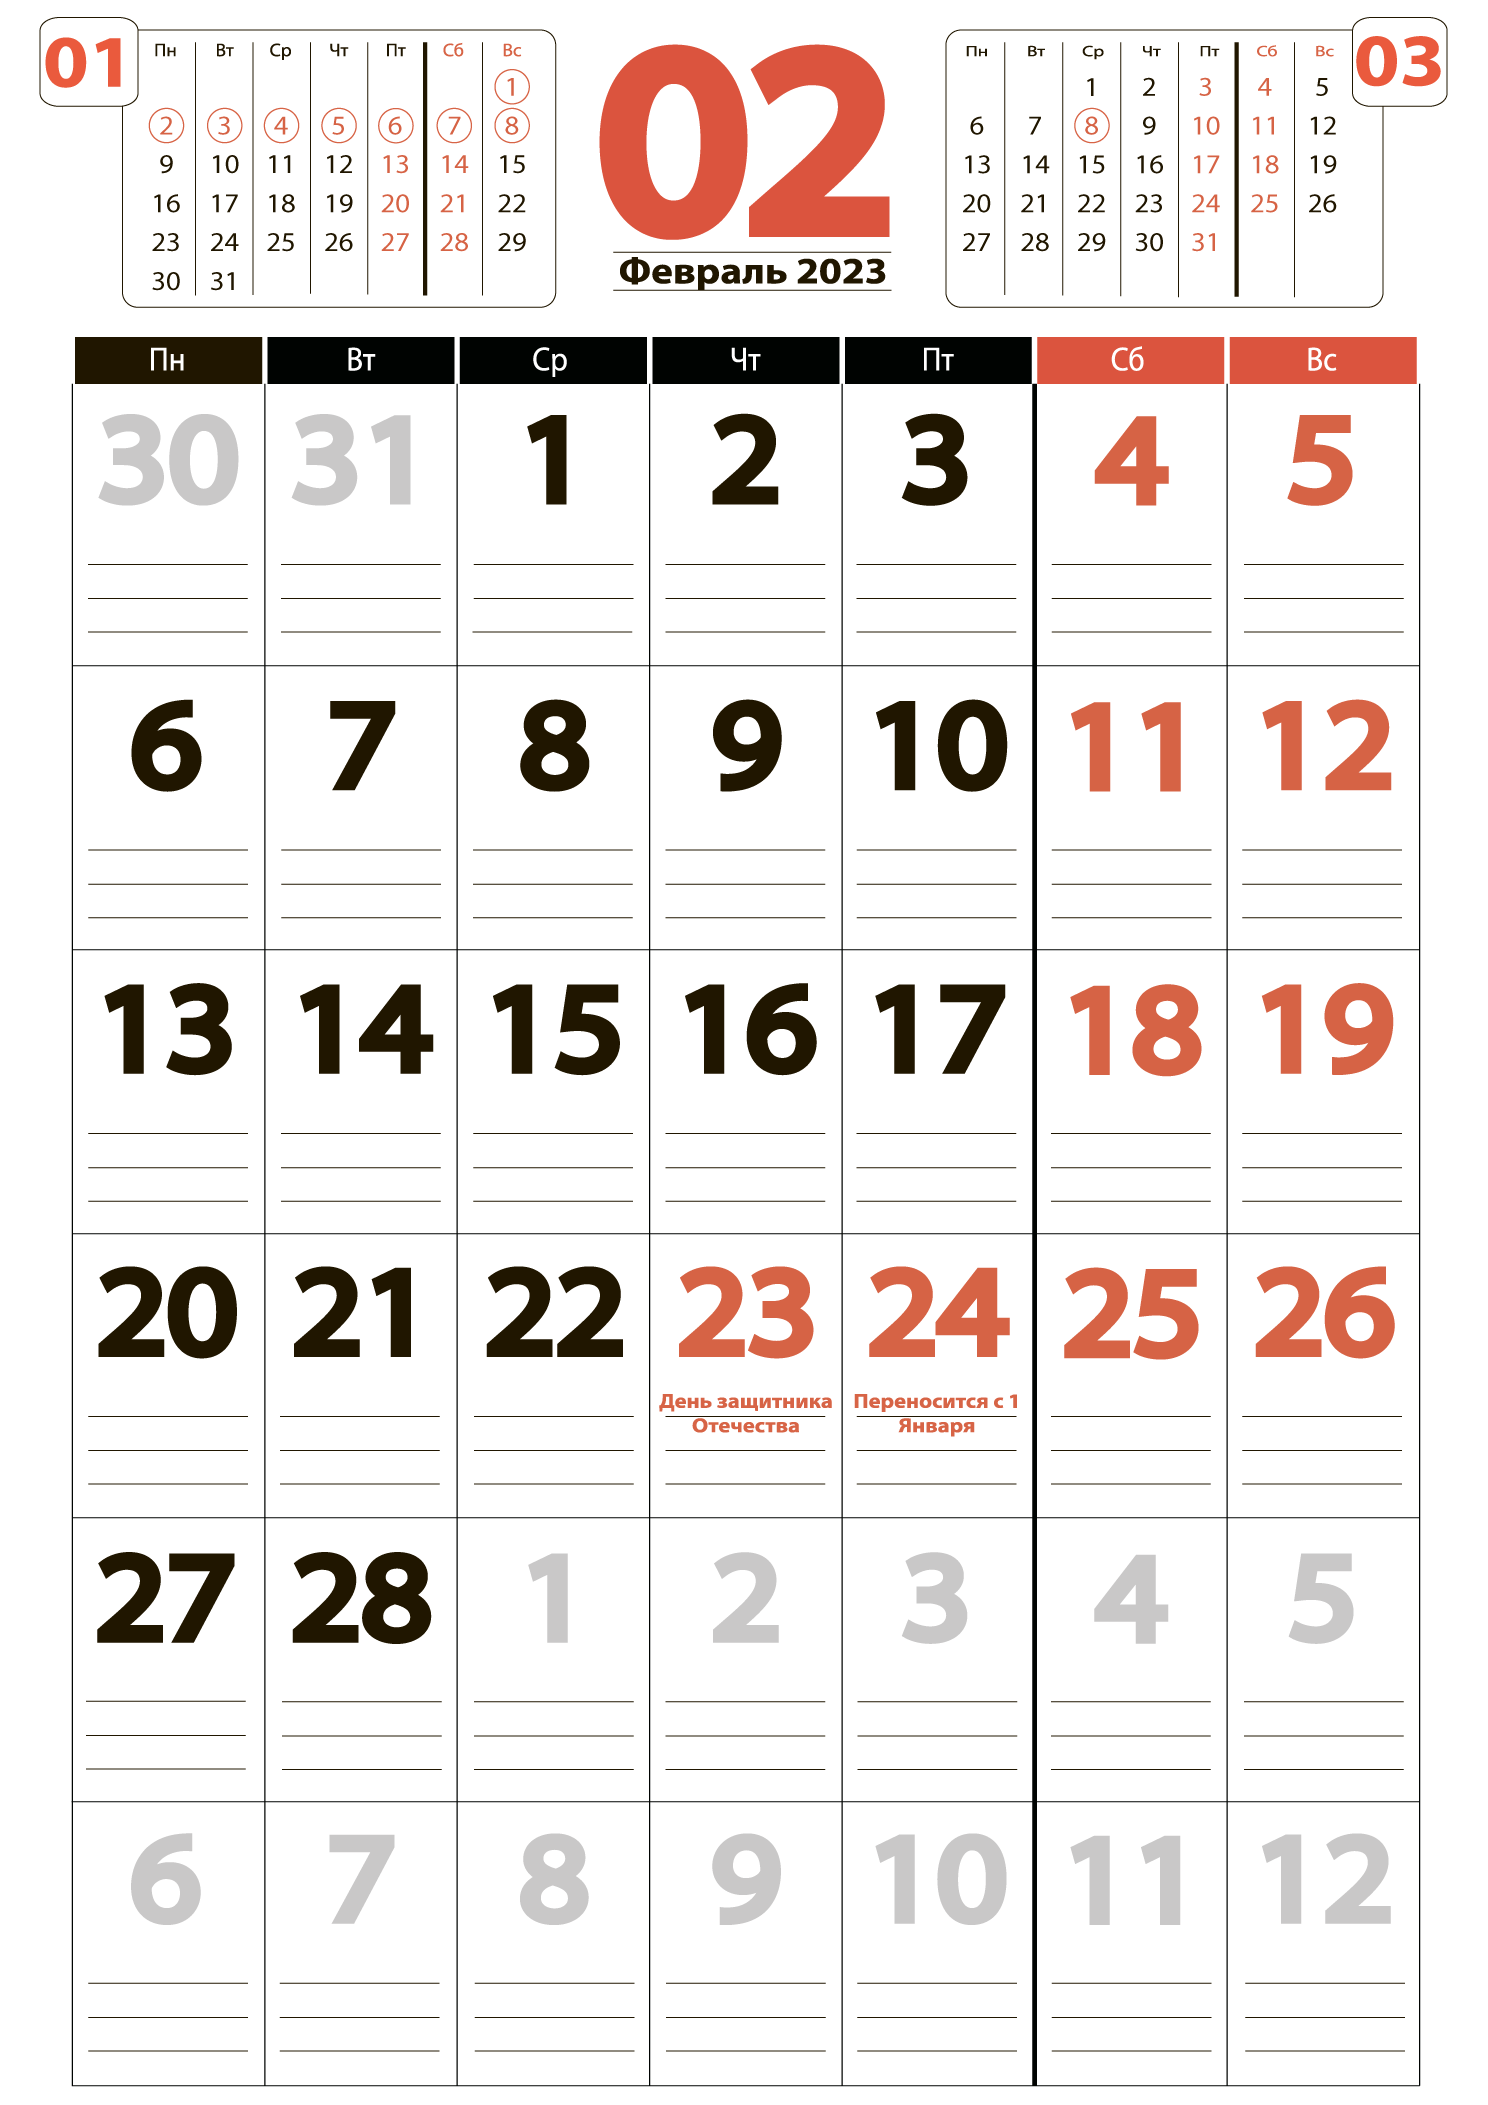 Печать крупного календаря на февраль 2023